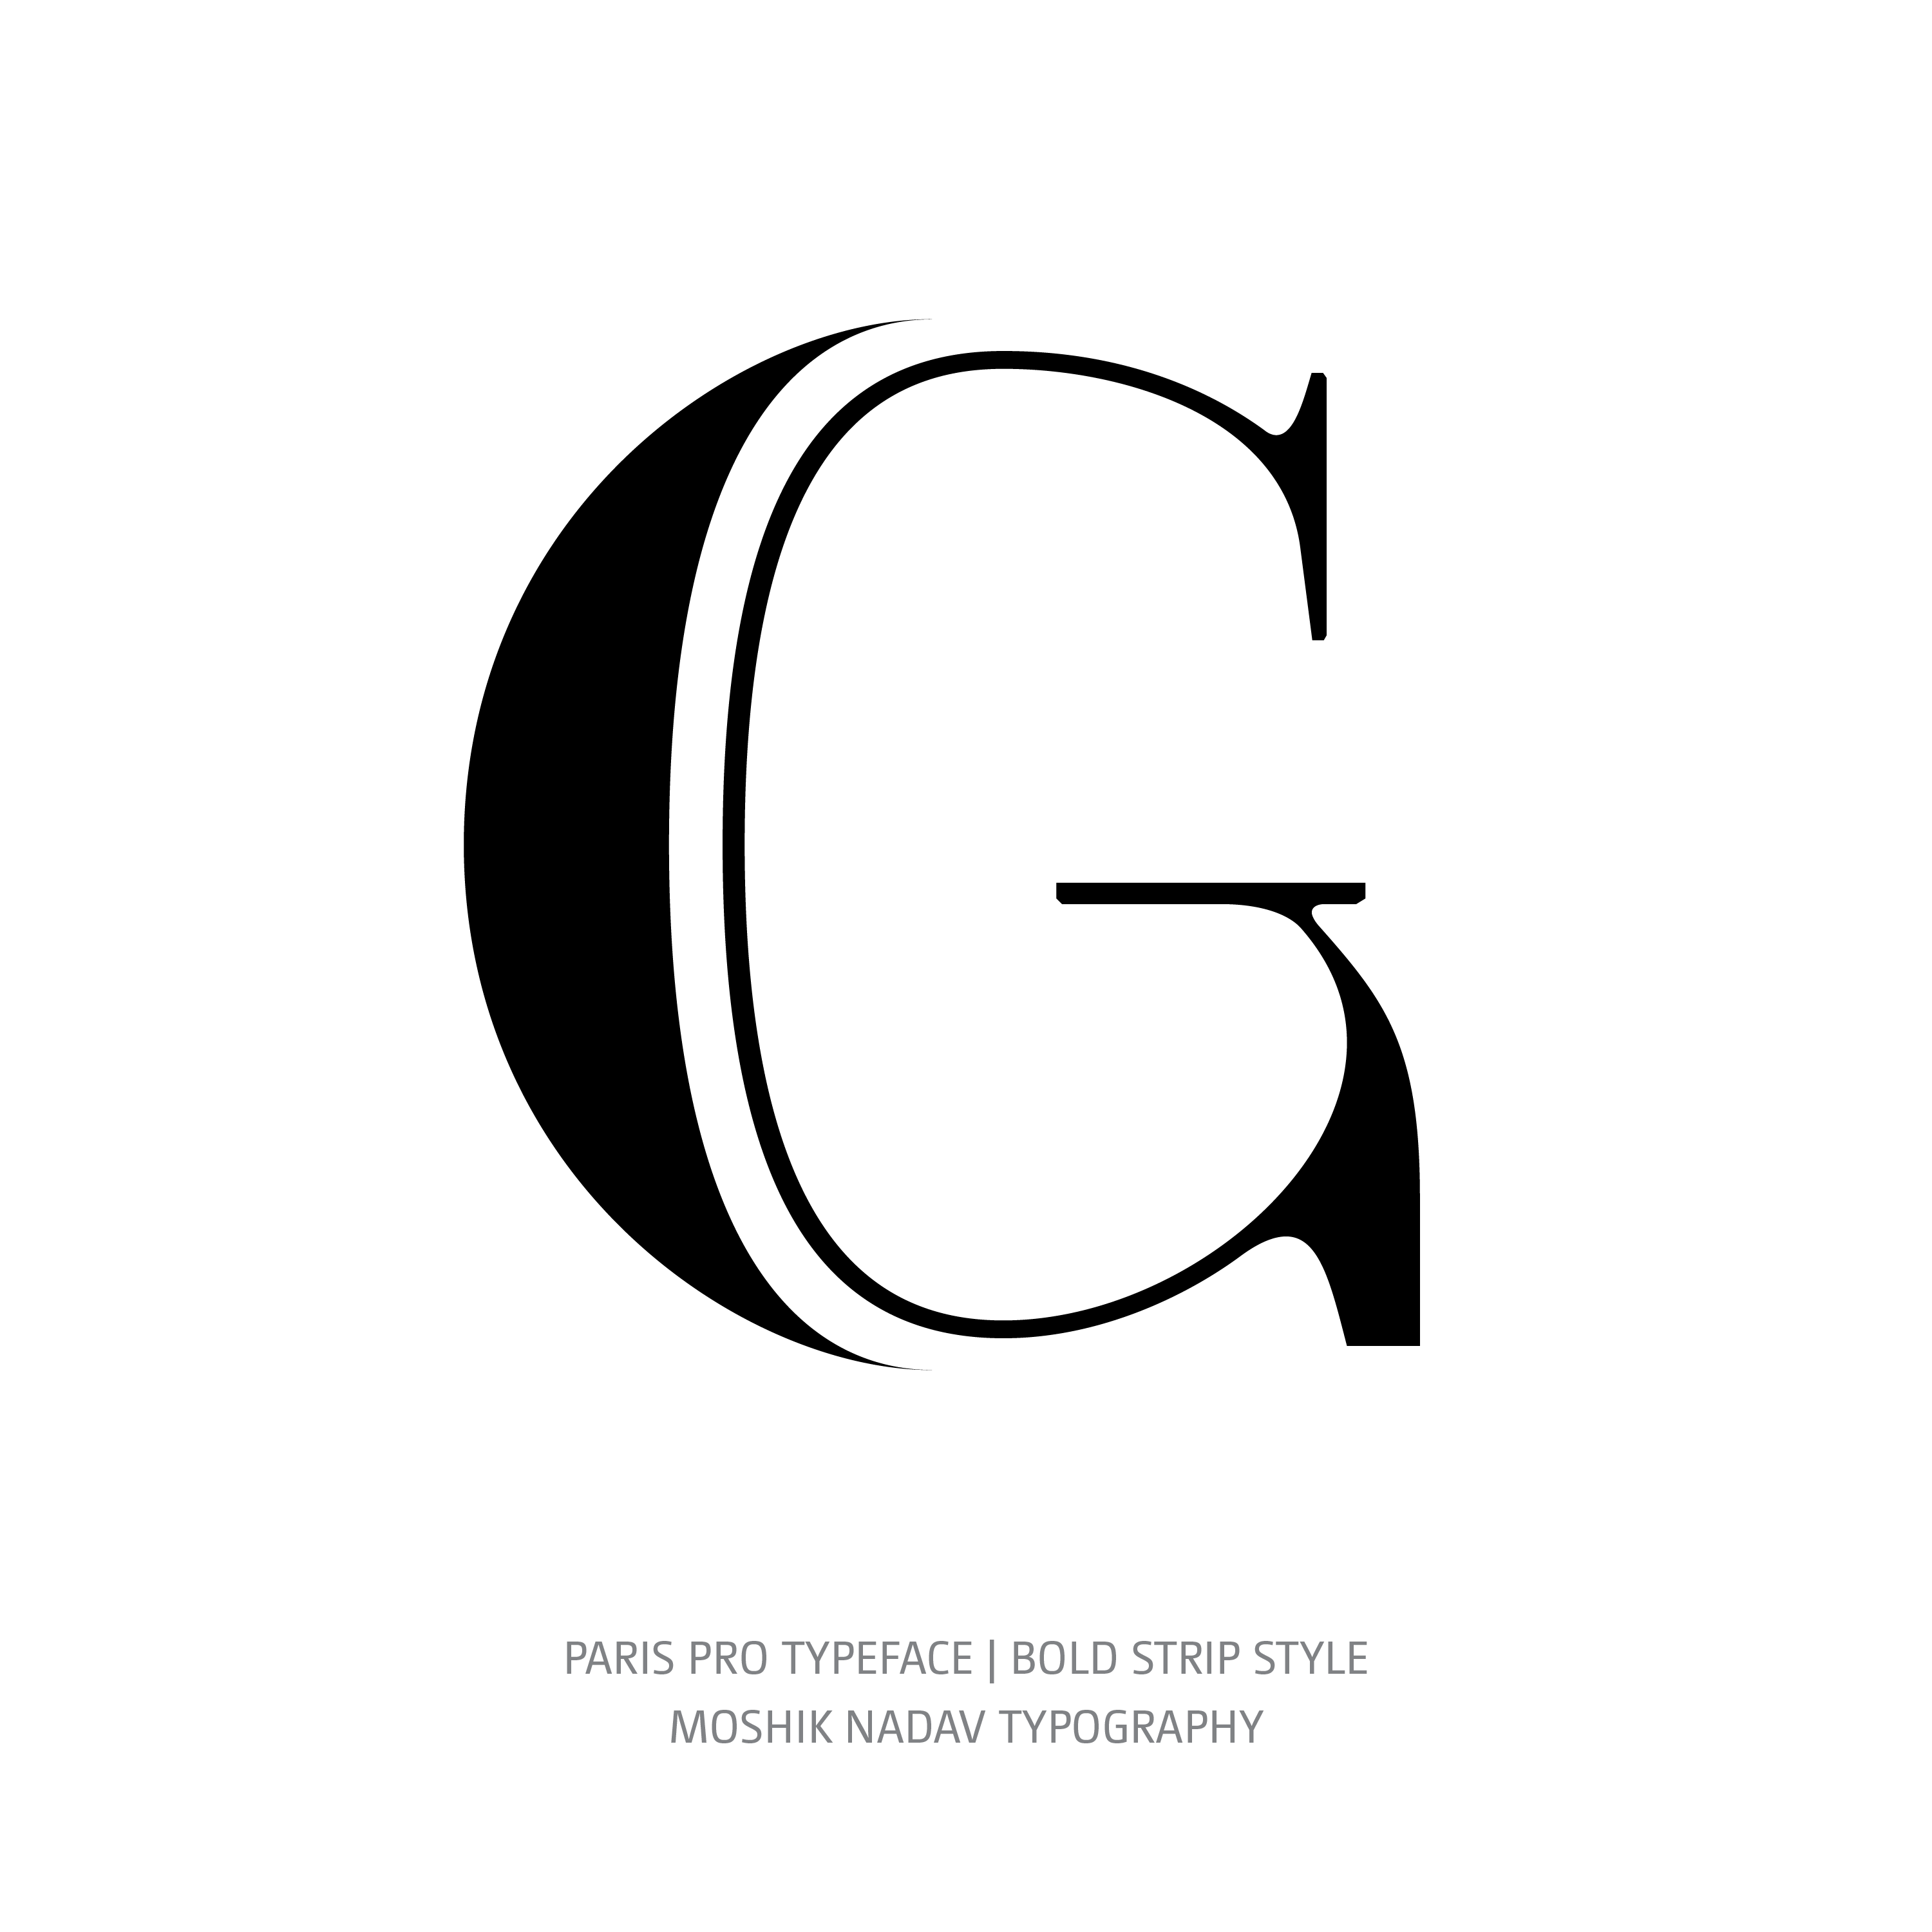 Paris Pro Typeface Bold Strip G